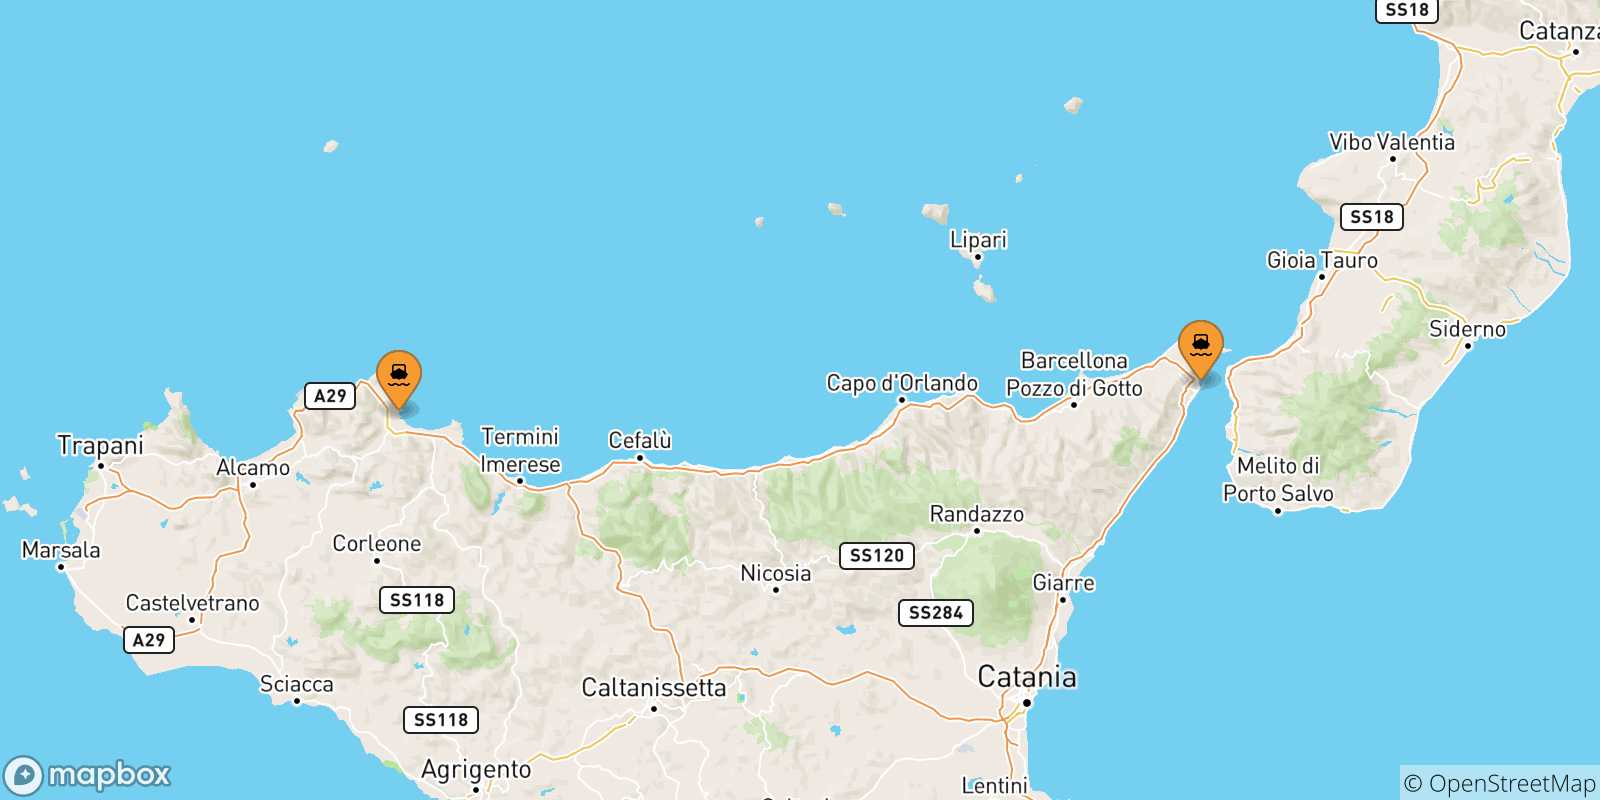 Mappa delle possibili rotte tra la Sicilia e Milazzo